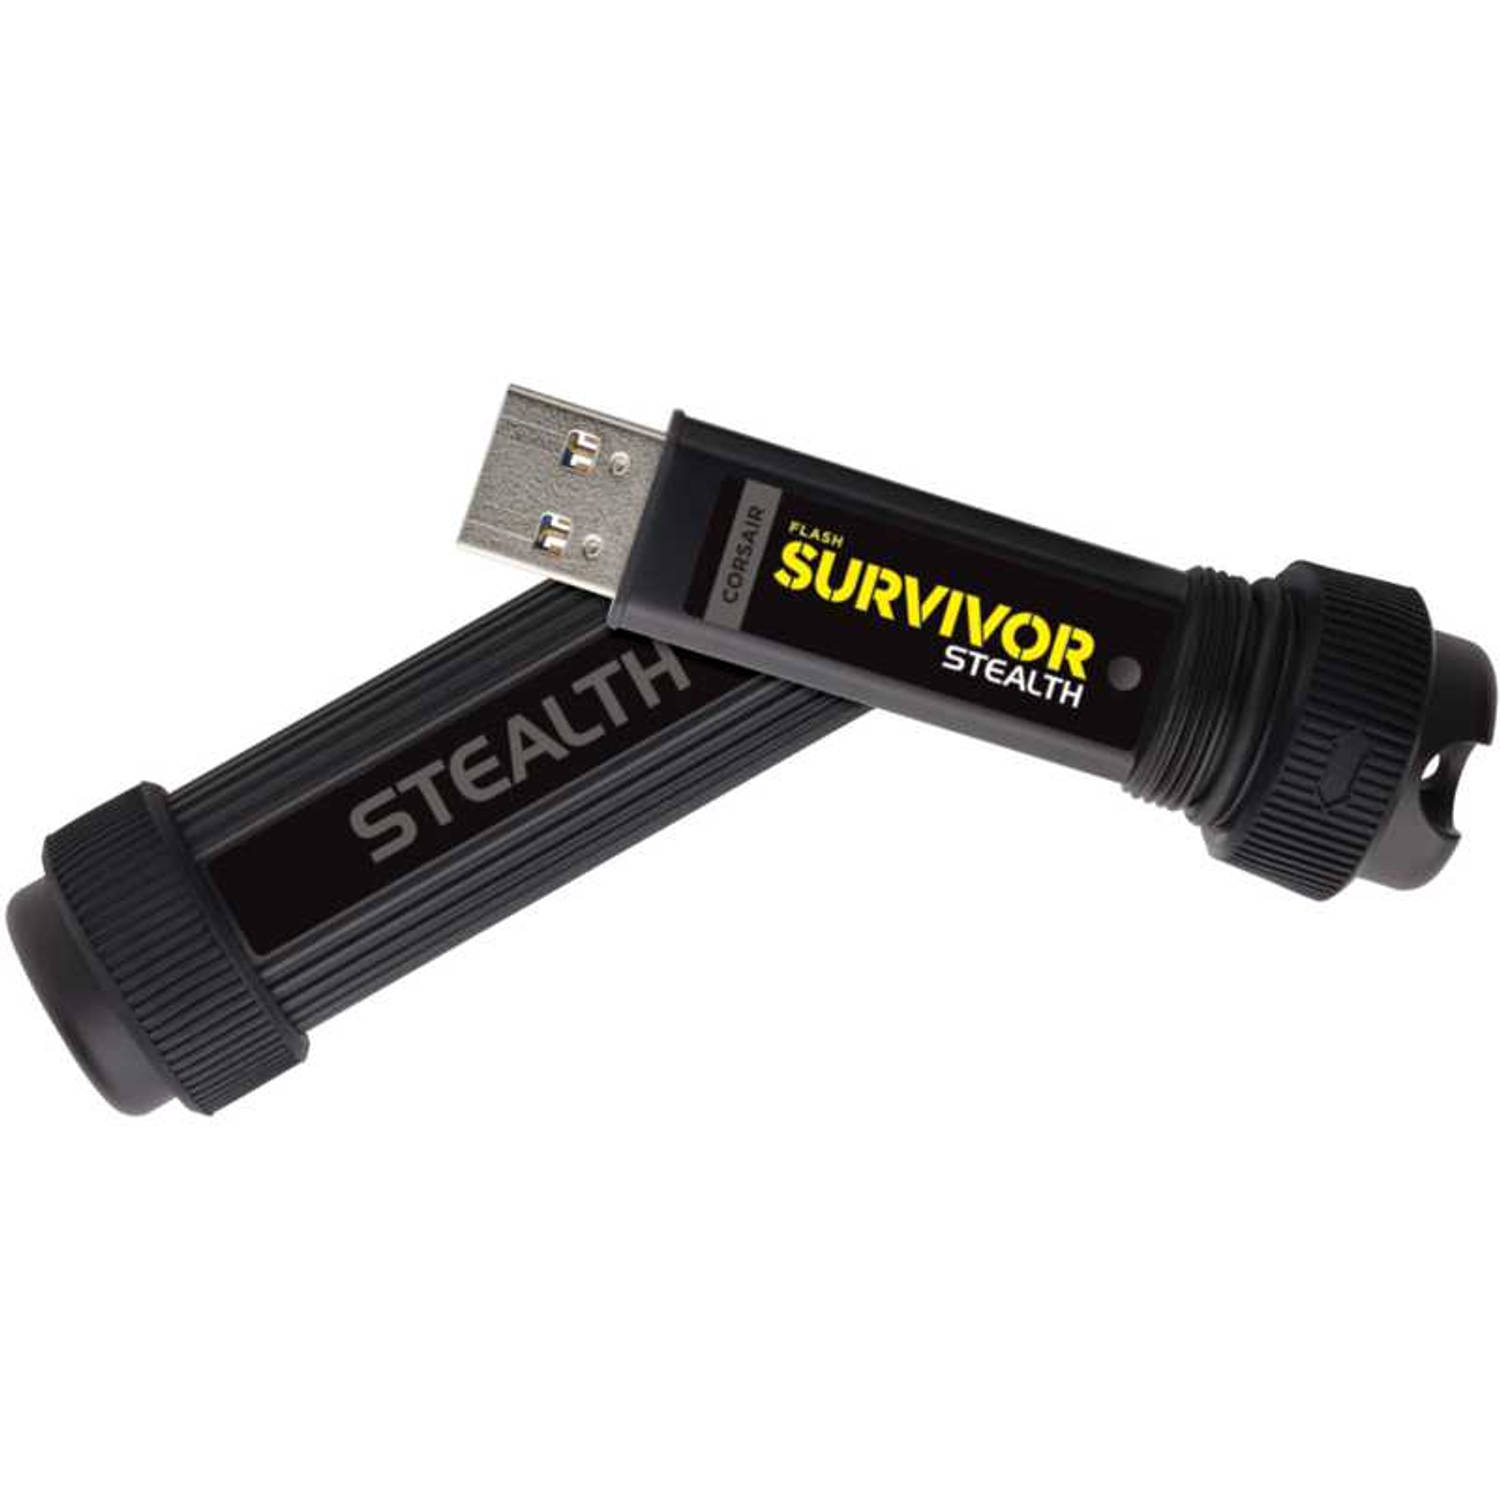 Corsair Survivor Stealth USB 3.0 1TB